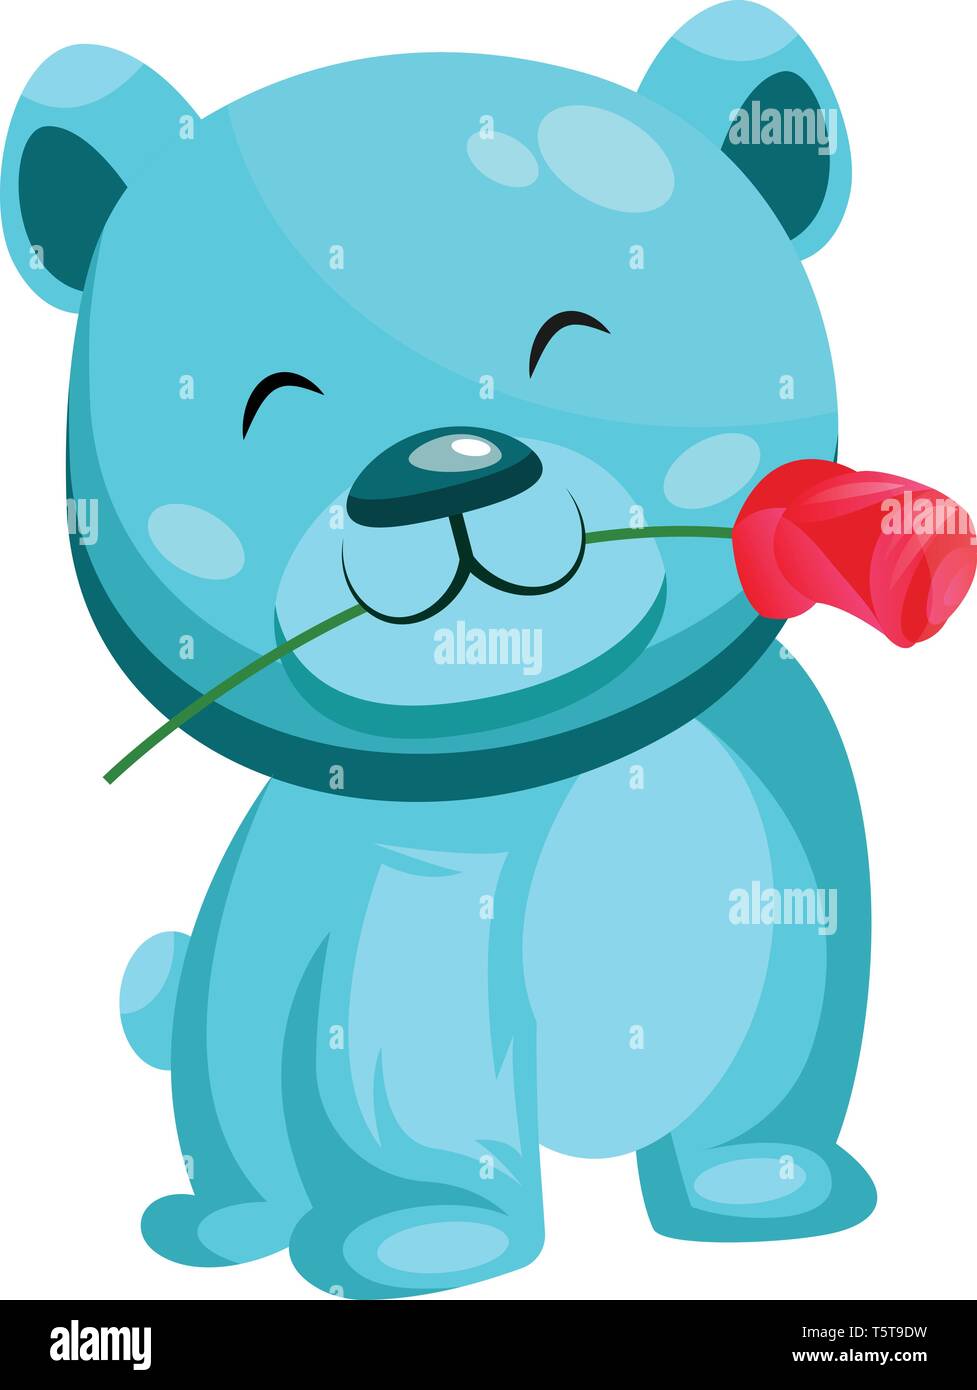 Turquoise Bear Holding eine rote Rose im Mund Vector Illustration auf weißem Hintergrund. Stock Vektor